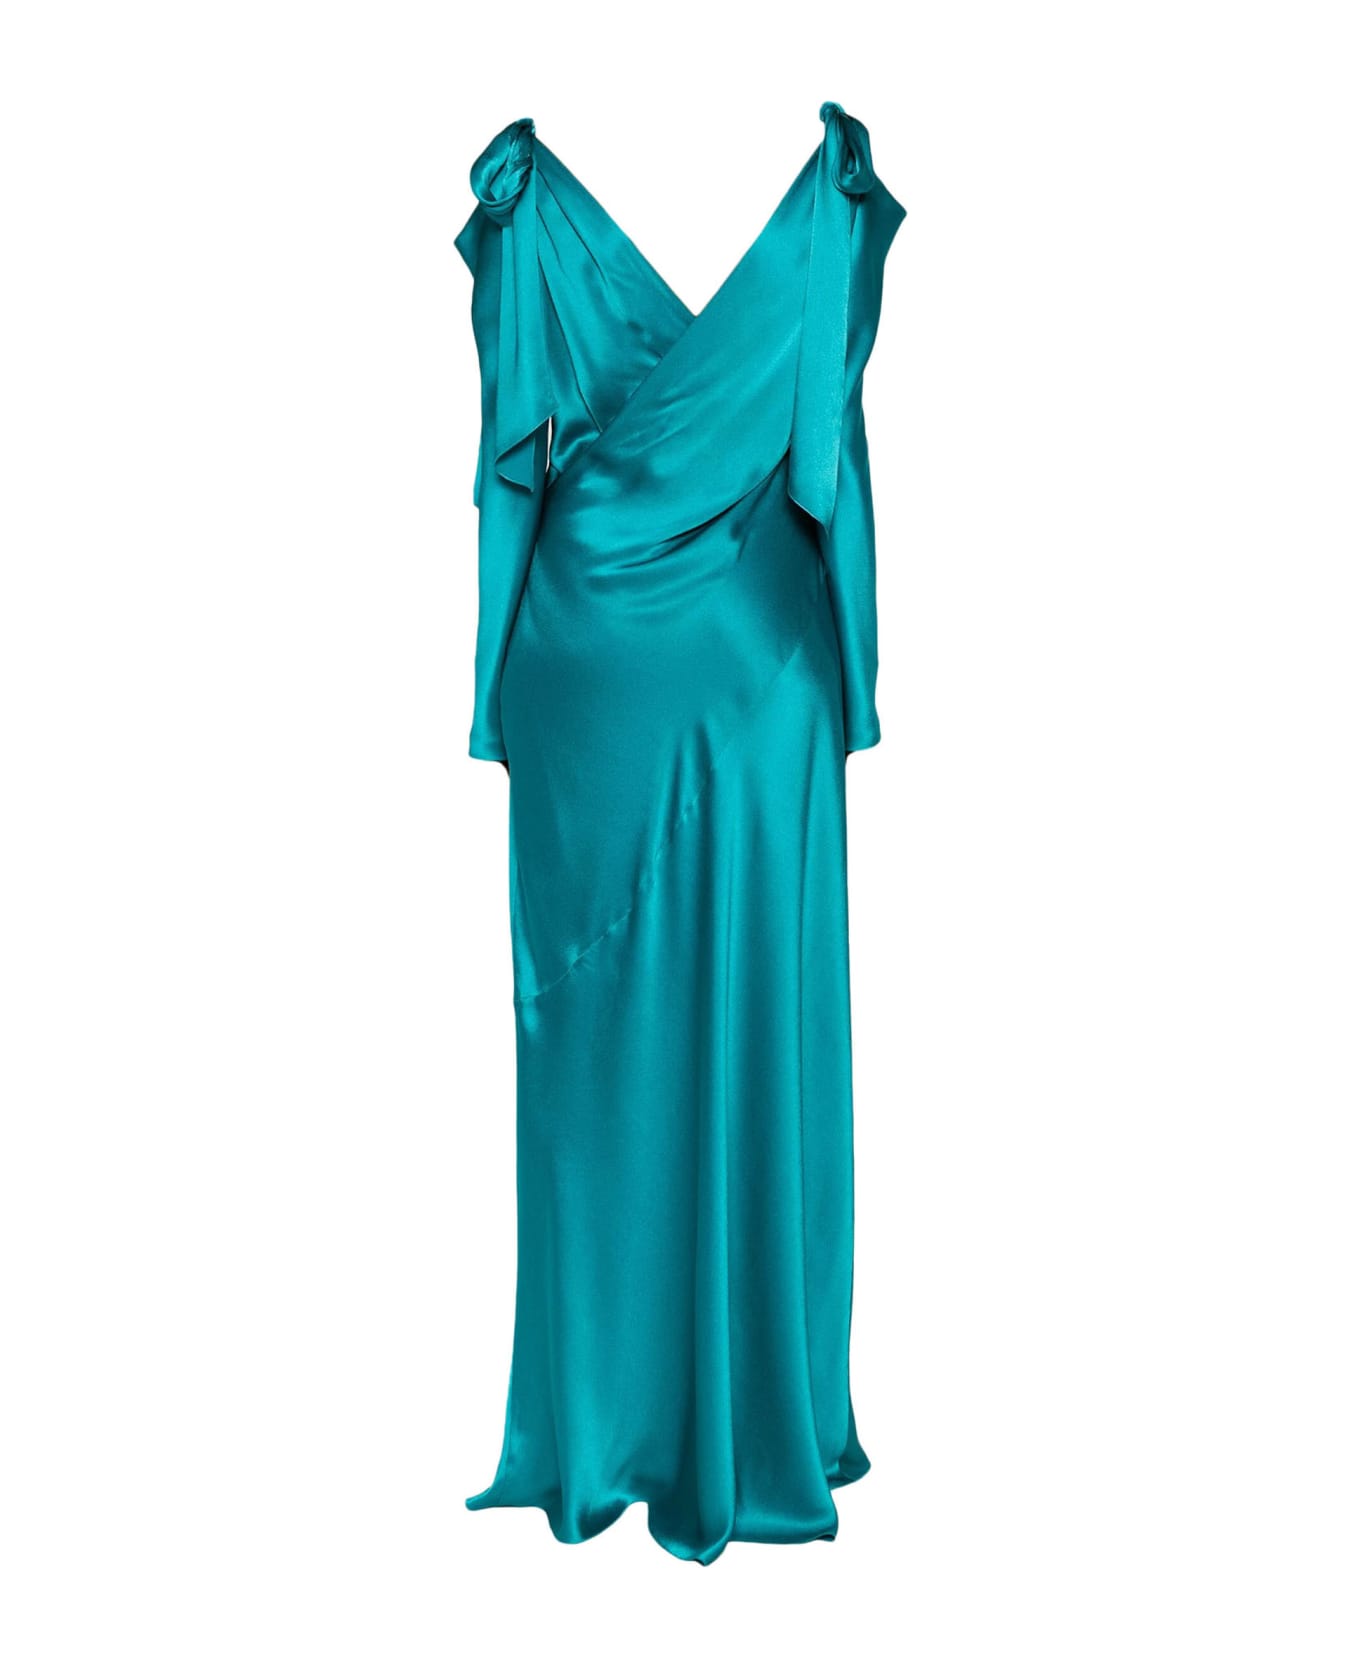 Alberta Ferretti Aqua Green Satin Finish Maxi Dress - Blue